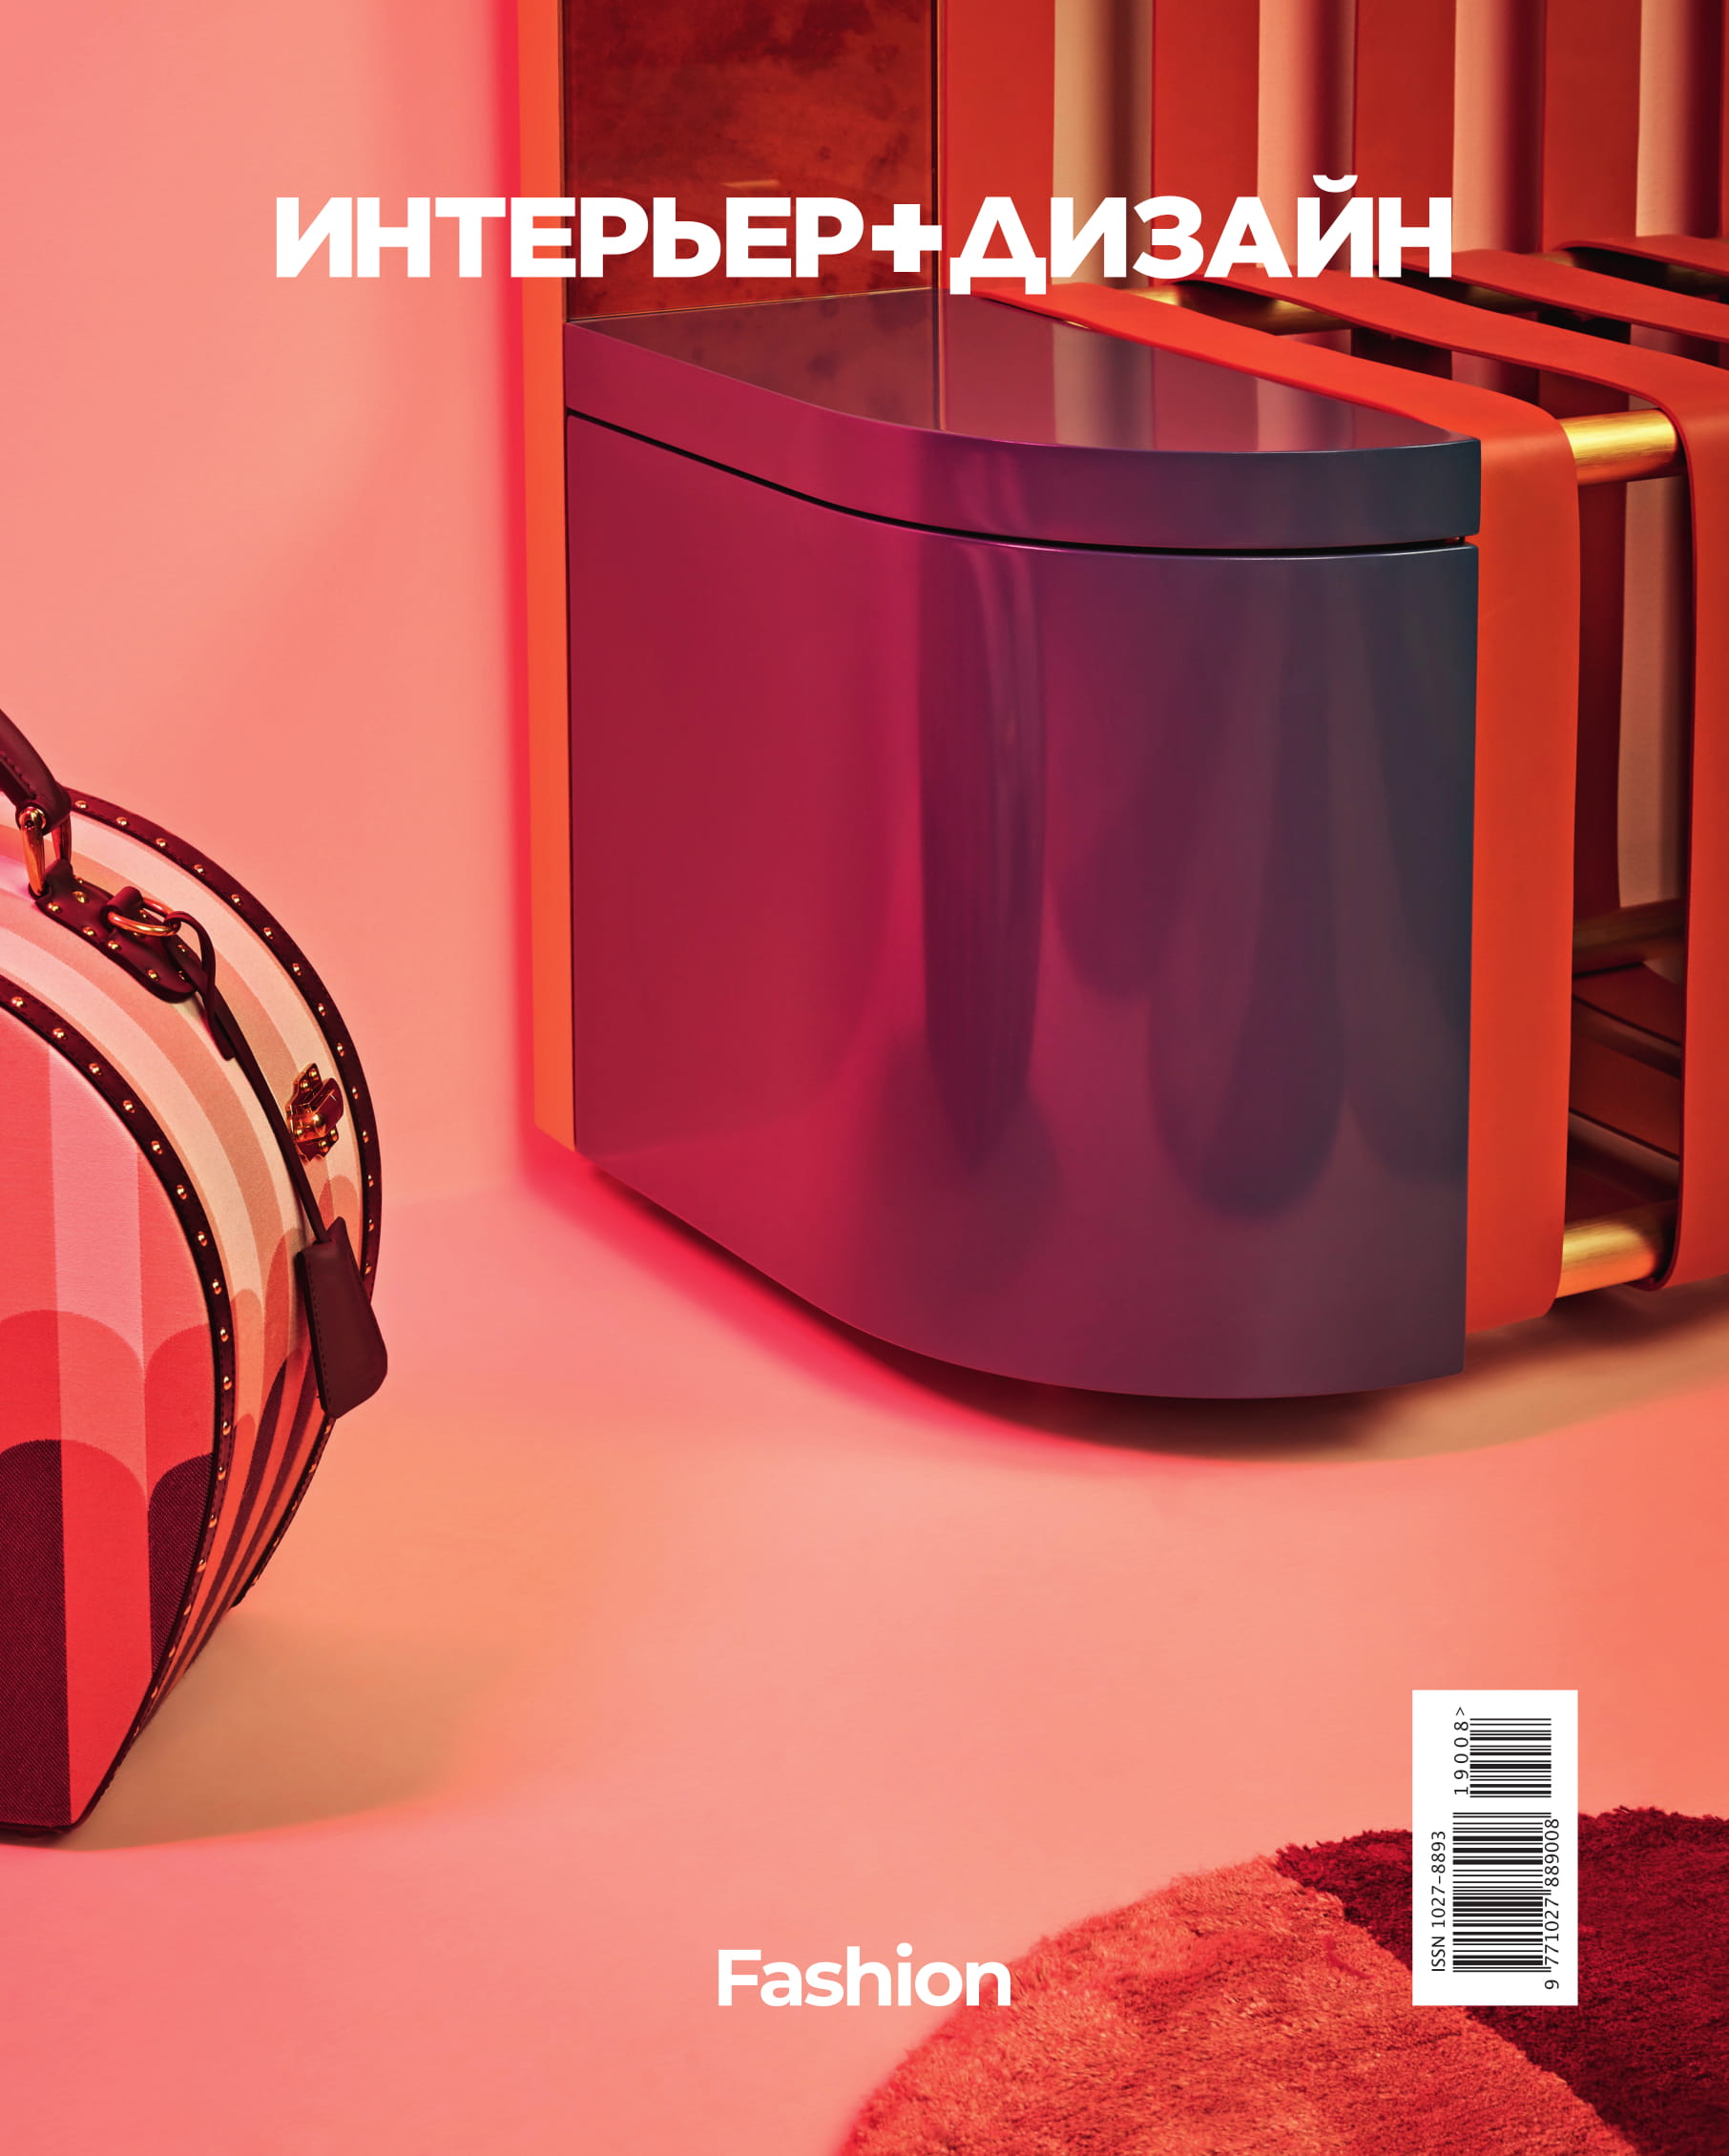 Журнал «Интерьер + Дизайн» посвятил новый номер моде (фото 1)